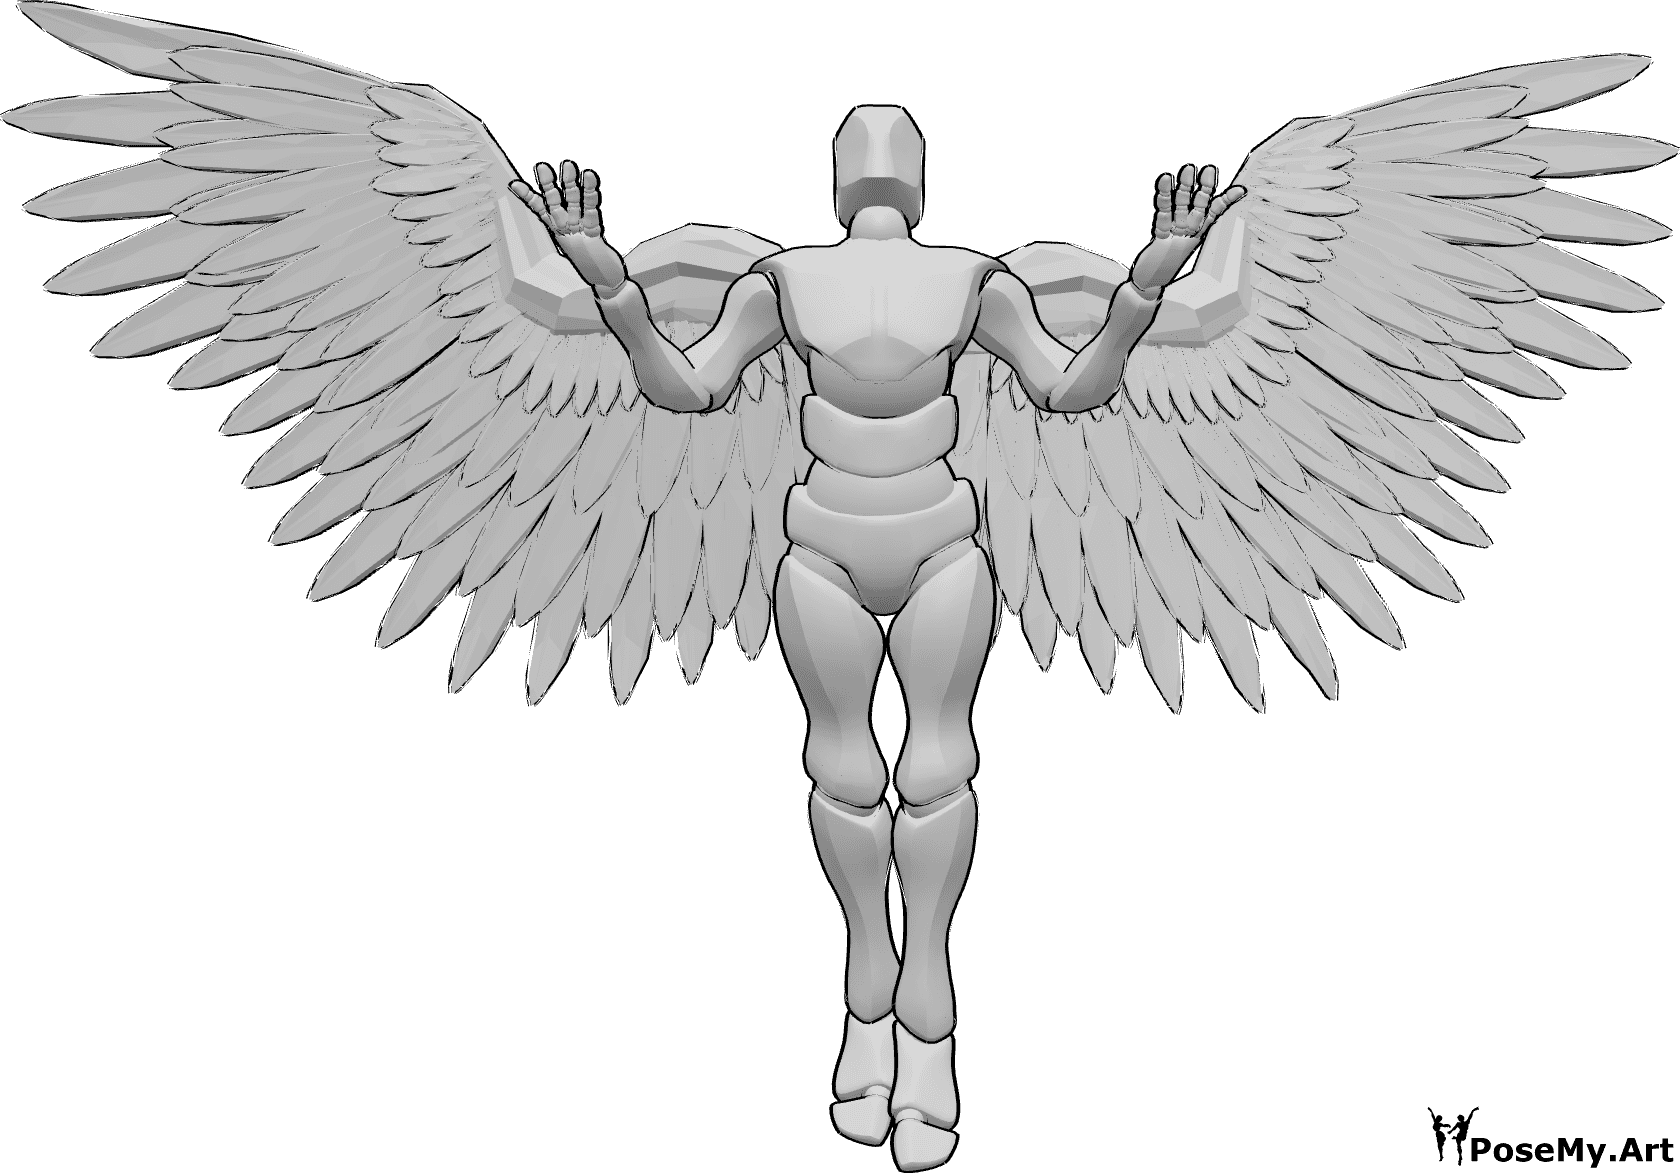 Referencia de poses- Postura masculina con alas de ángel - Varón con alas de ángel está volando hacia arriba, levantando las manos y mirando hacia arriba